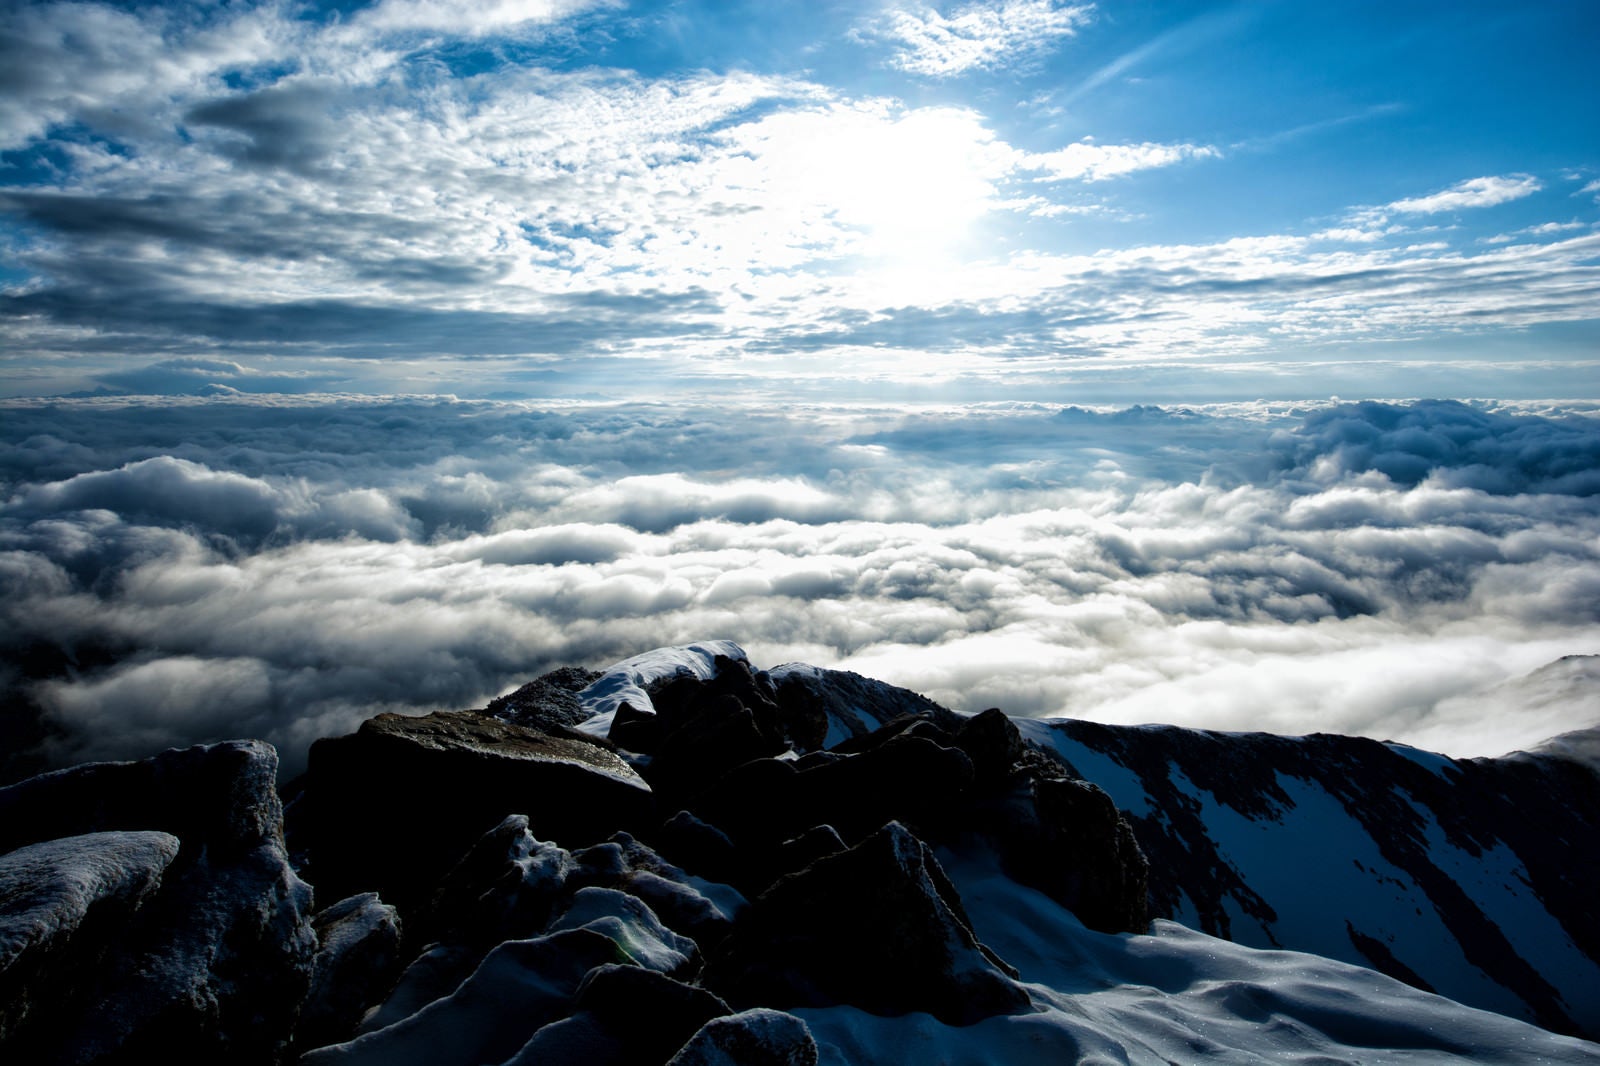 「山頂から眼下に広がる雲海」の写真